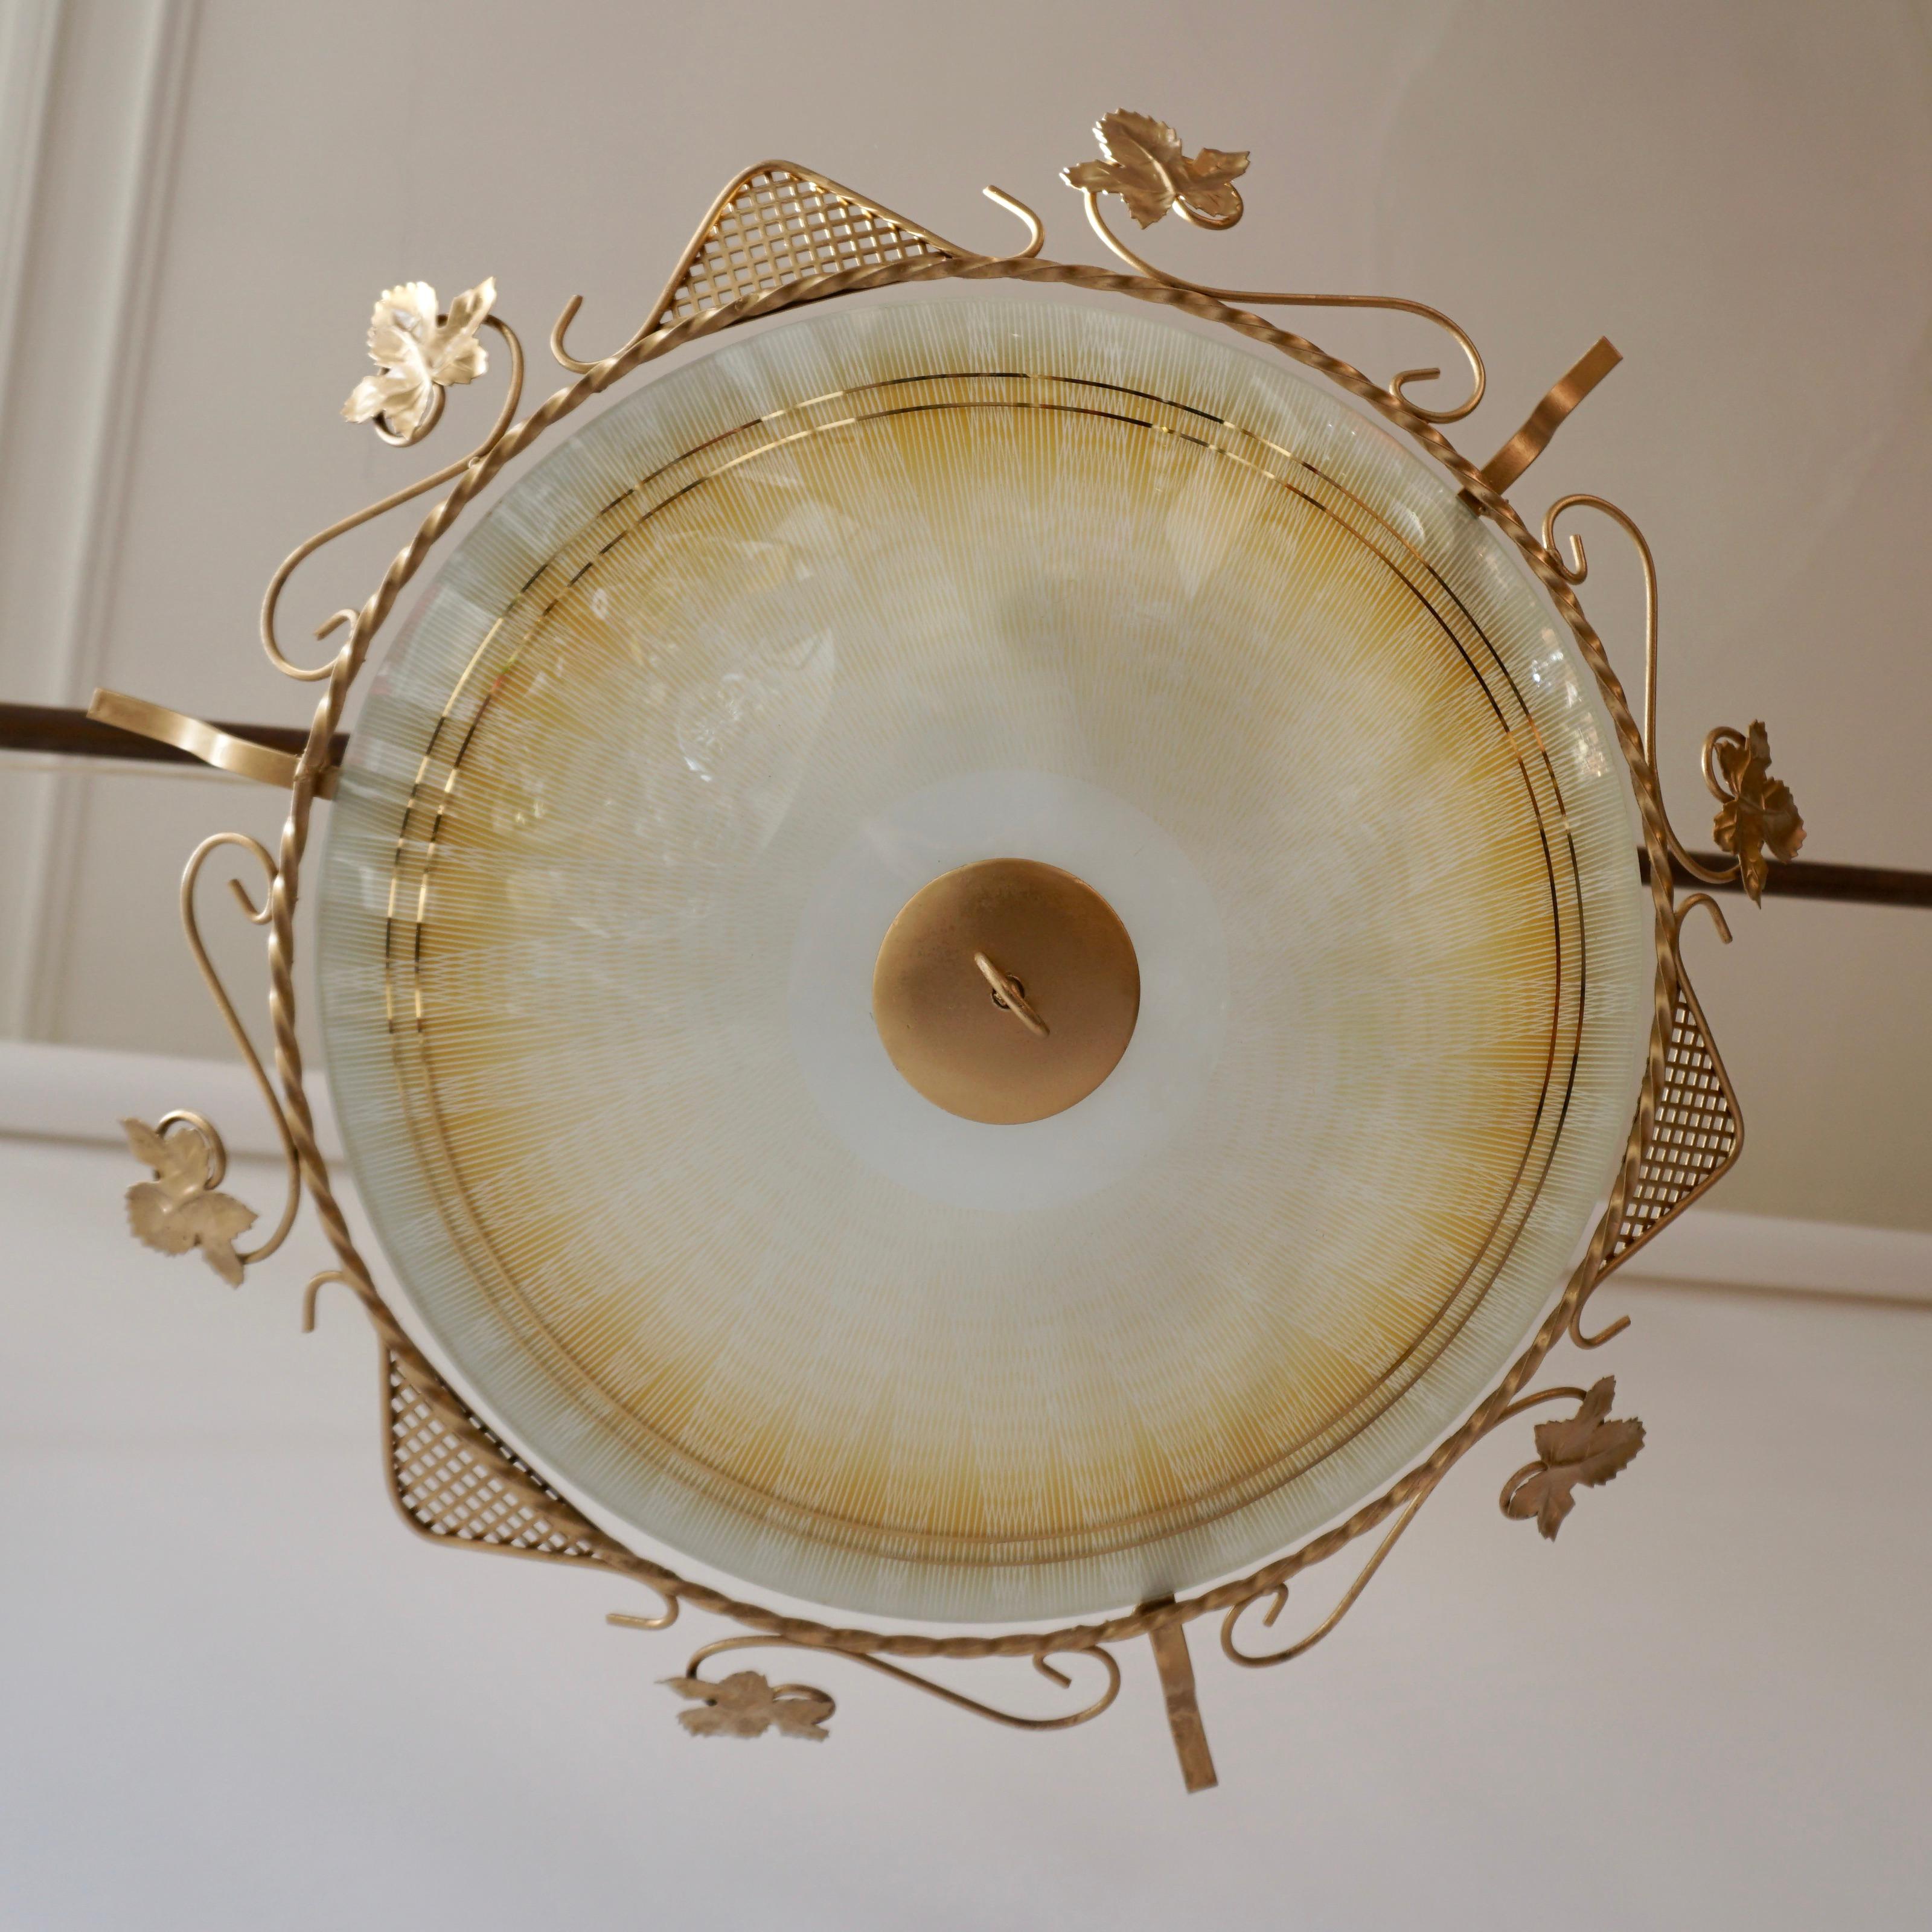 Große und elegante Mid-Century Modern Sputnik Unterputz- oder Wandleuchte. Hergestellt wahrscheinlich in Murano in Italien, 1950er Jahre. 
Die Lampe ist aus Opalglas und vergoldetem Metall gefertigt. 
Es werden 3 x E27-Schraubglühbirnen benötigt.